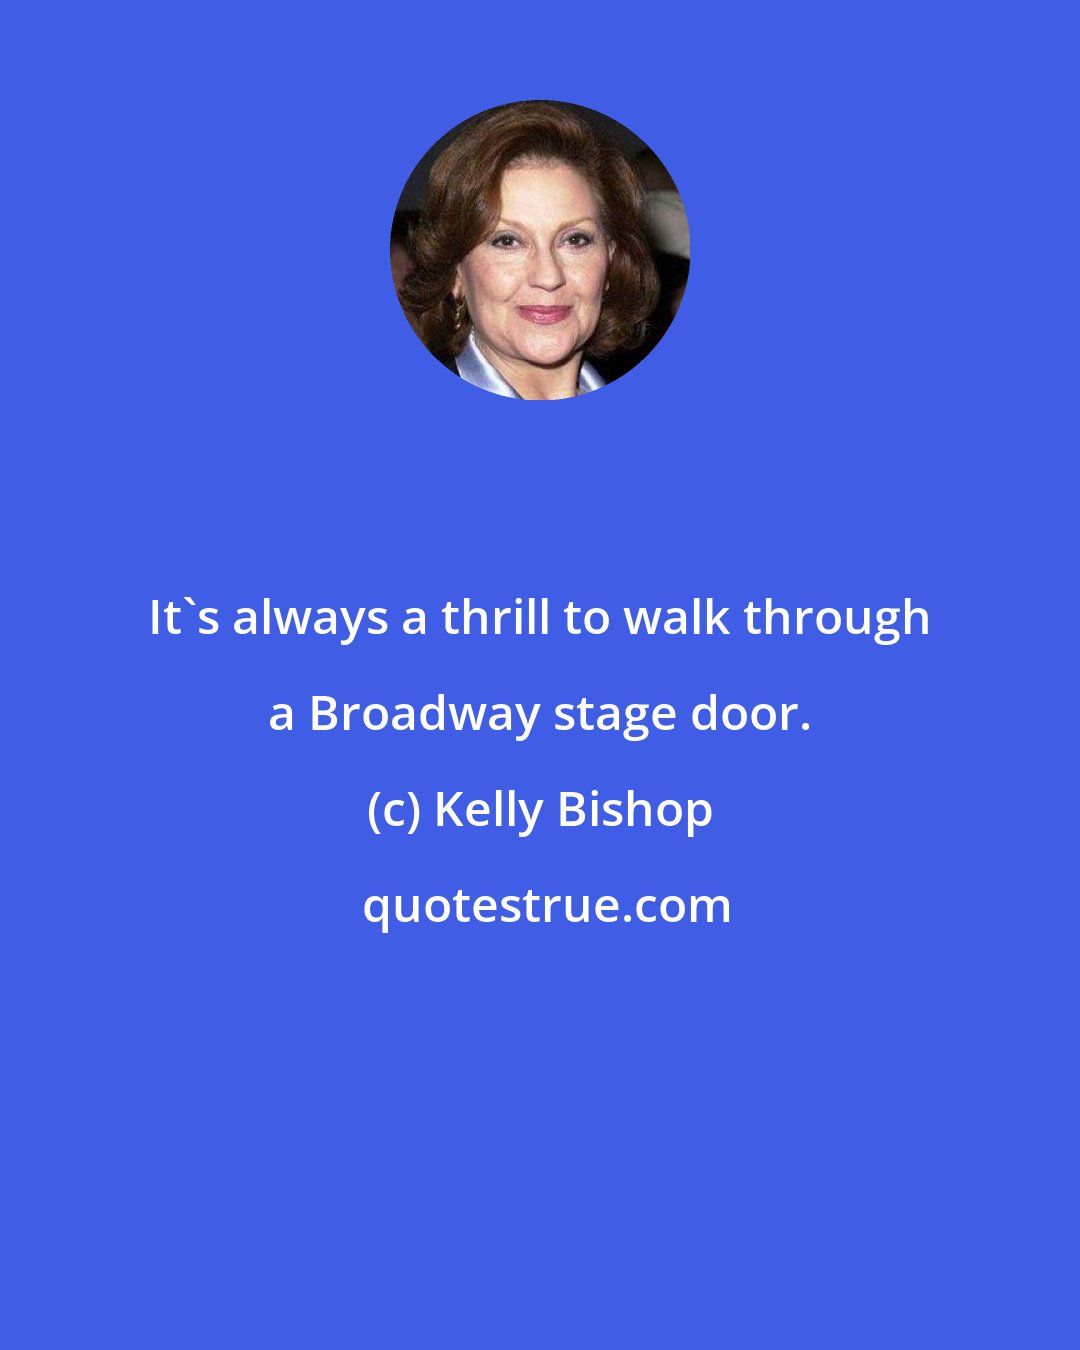 Kelly Bishop: It's always a thrill to walk through a Broadway stage door.